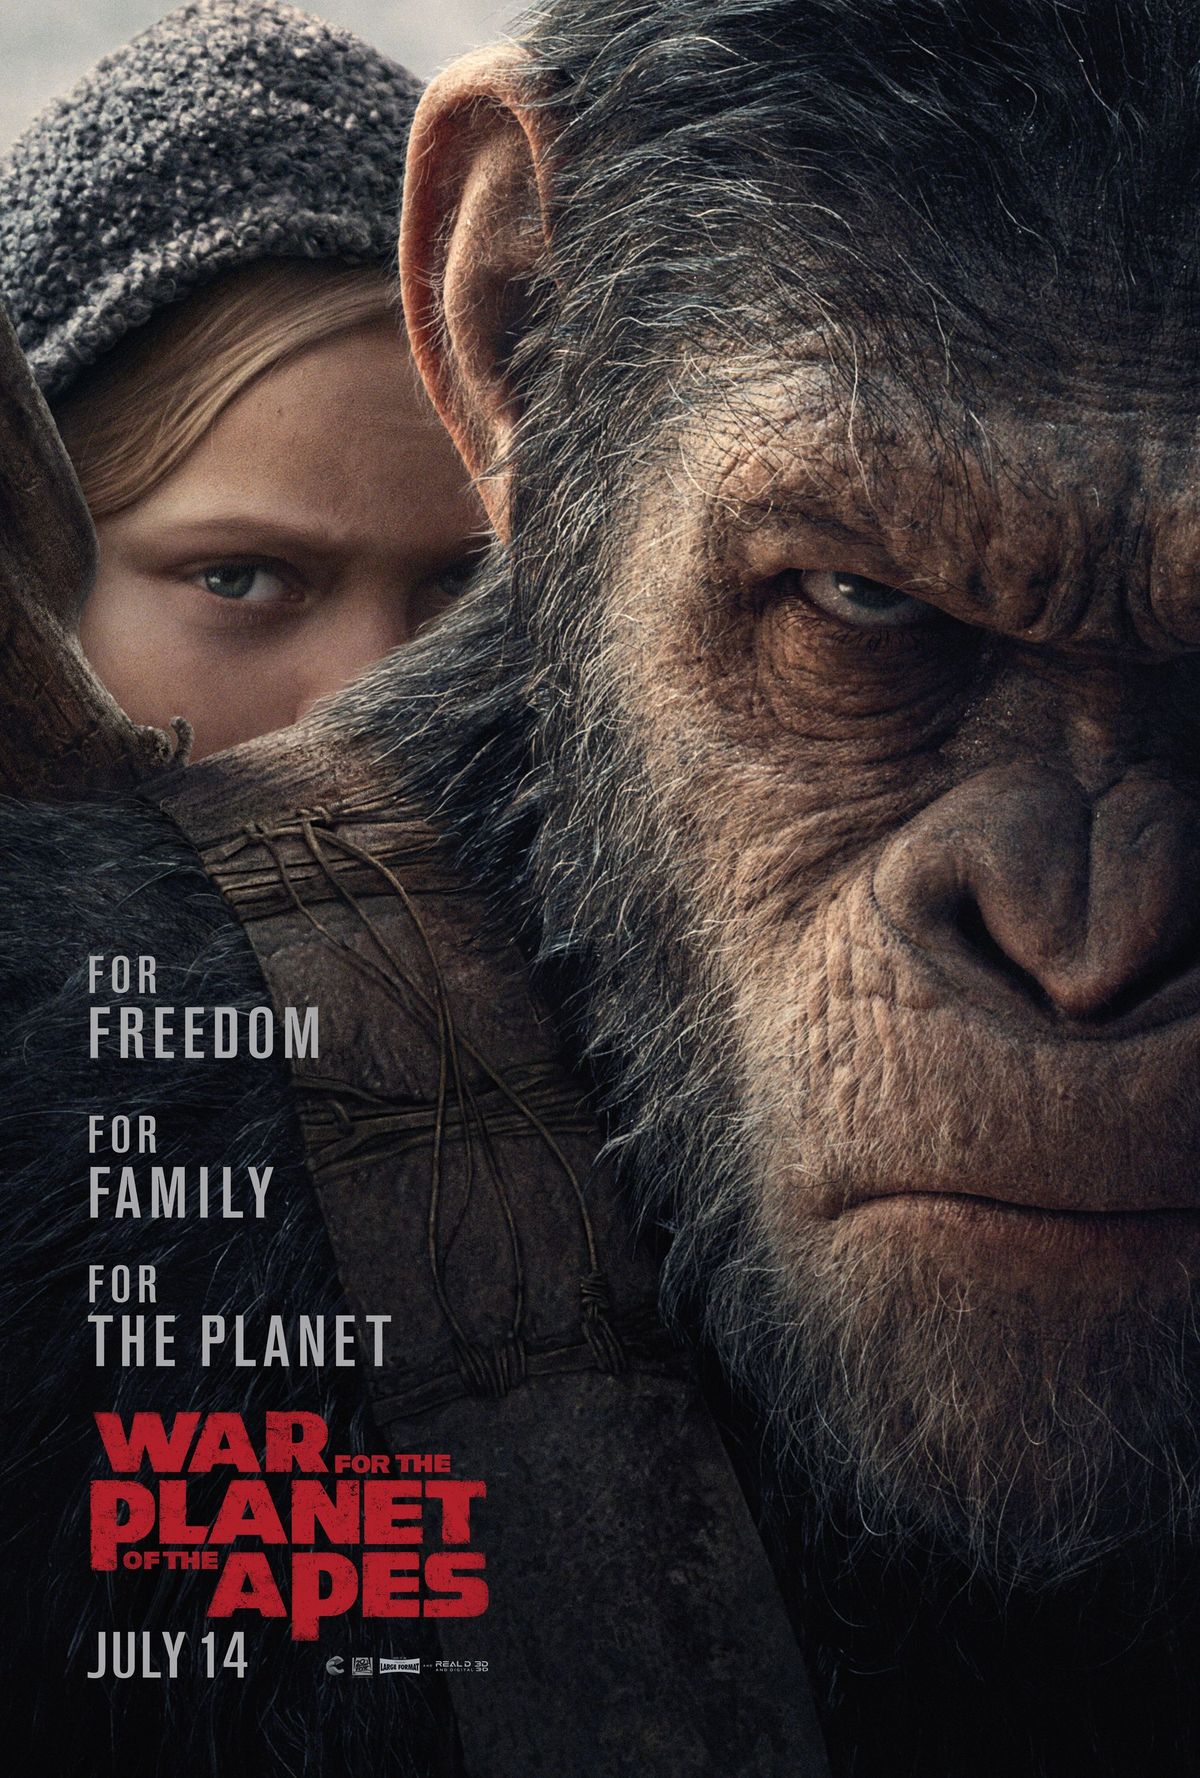 Krig for abernes planet debuterer på ny plakat